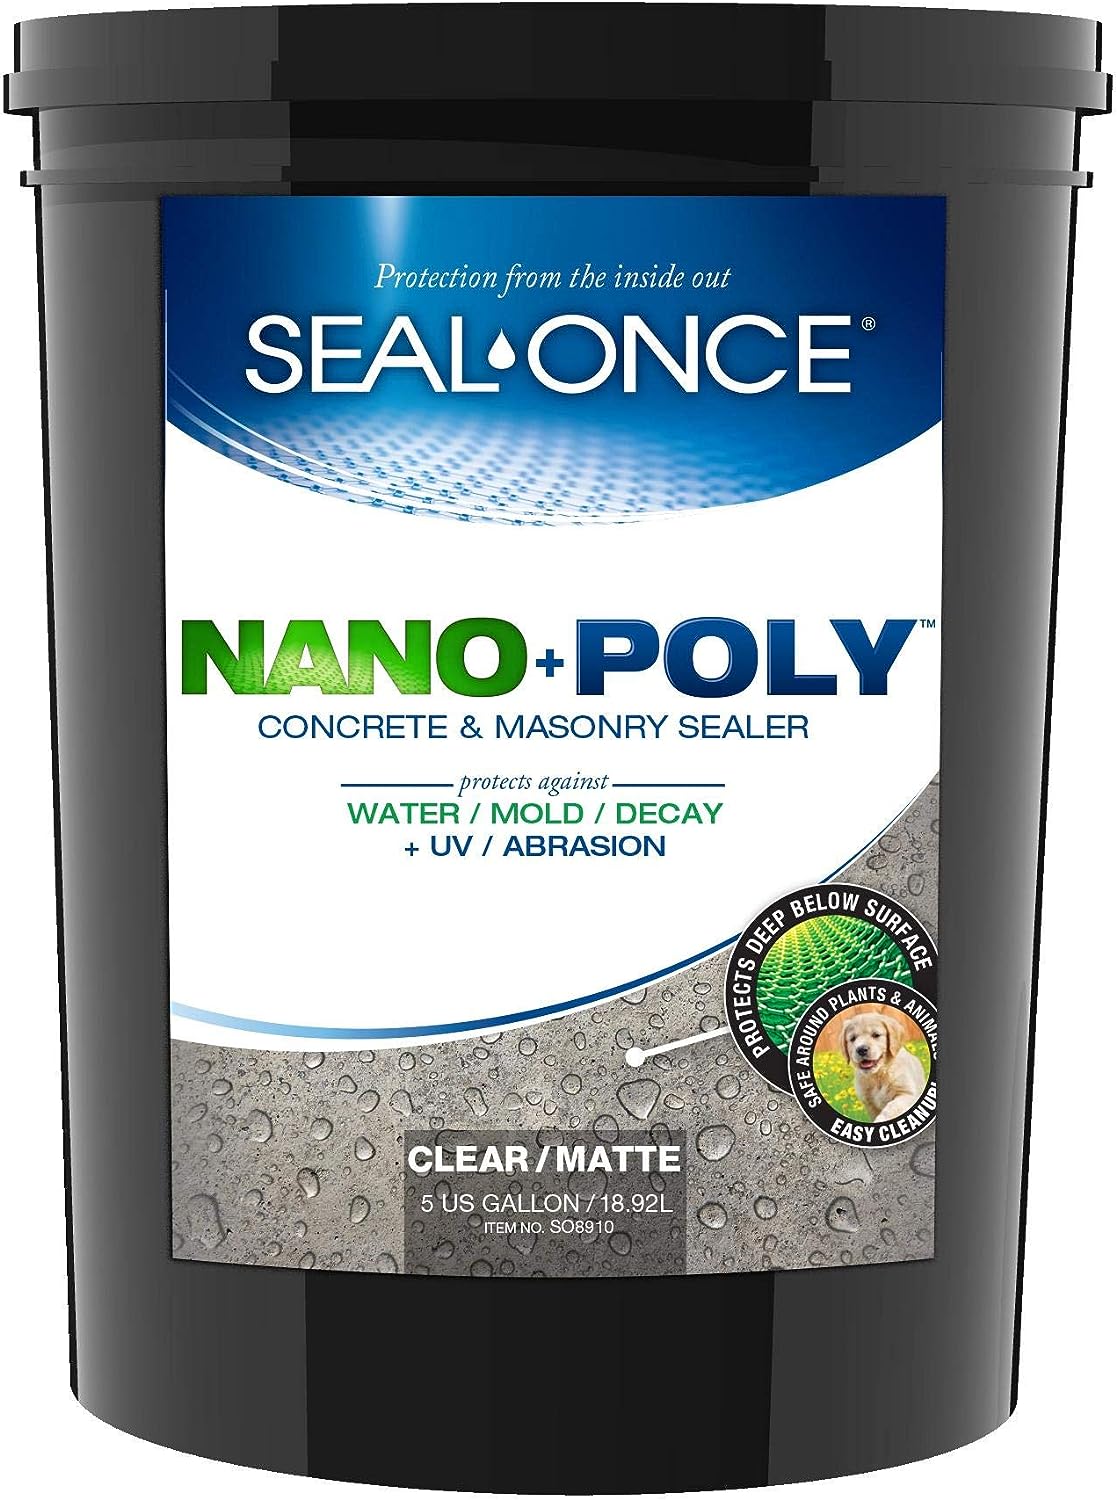 SEAL-ONCE Nano+Poly Concrete & Masonry Penetrating [...]